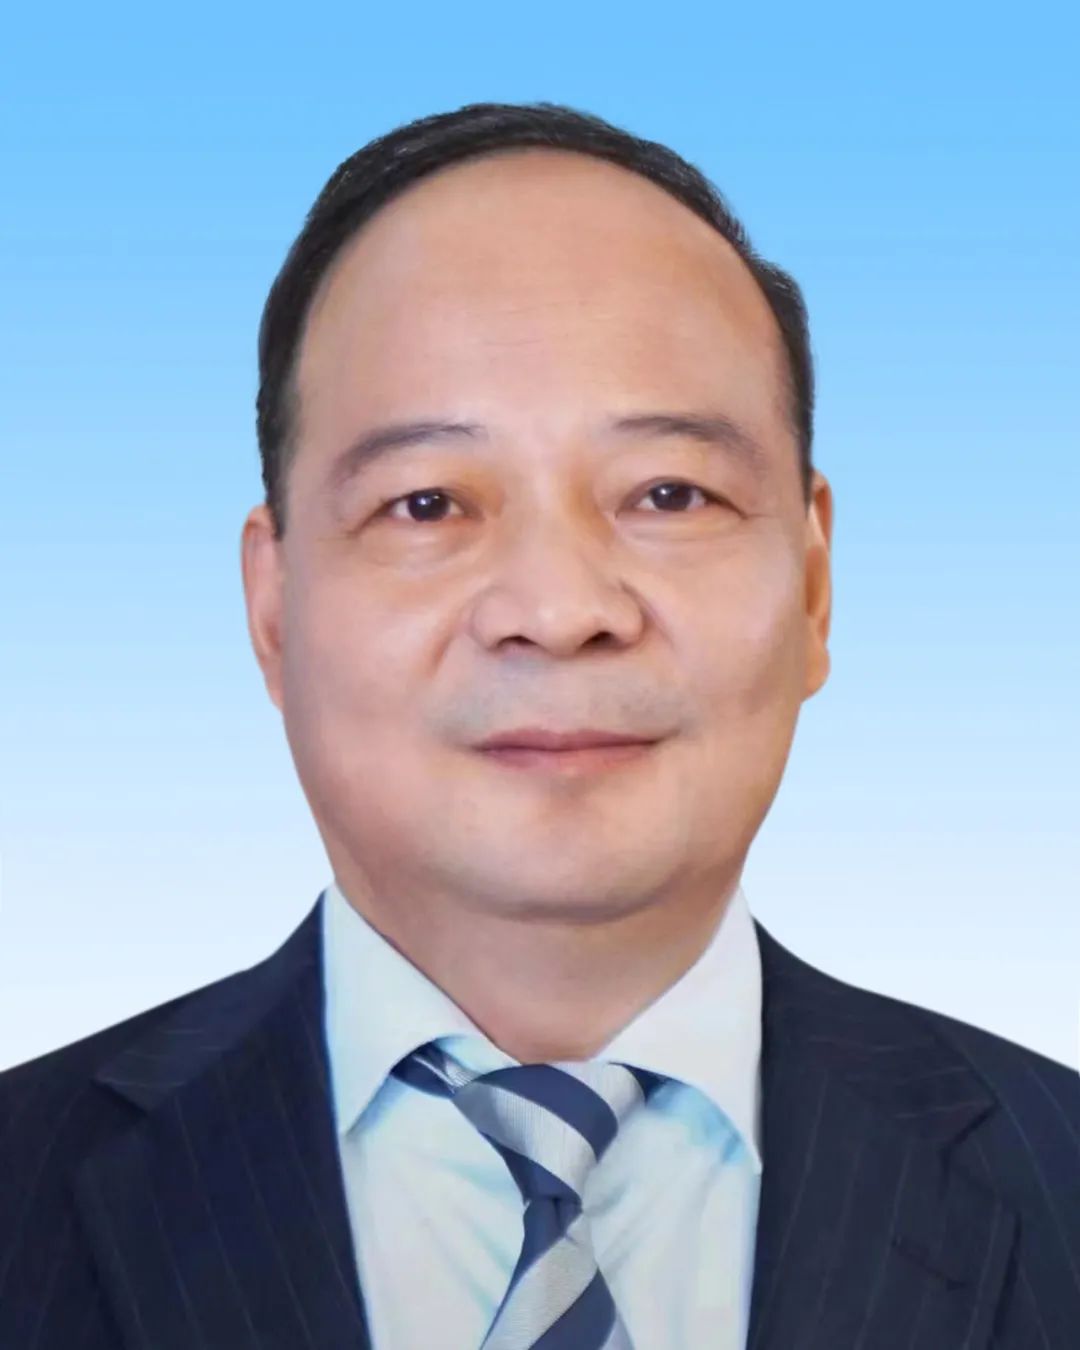 宁德时代董事长曾毓群当选新一届全国工商联副主席